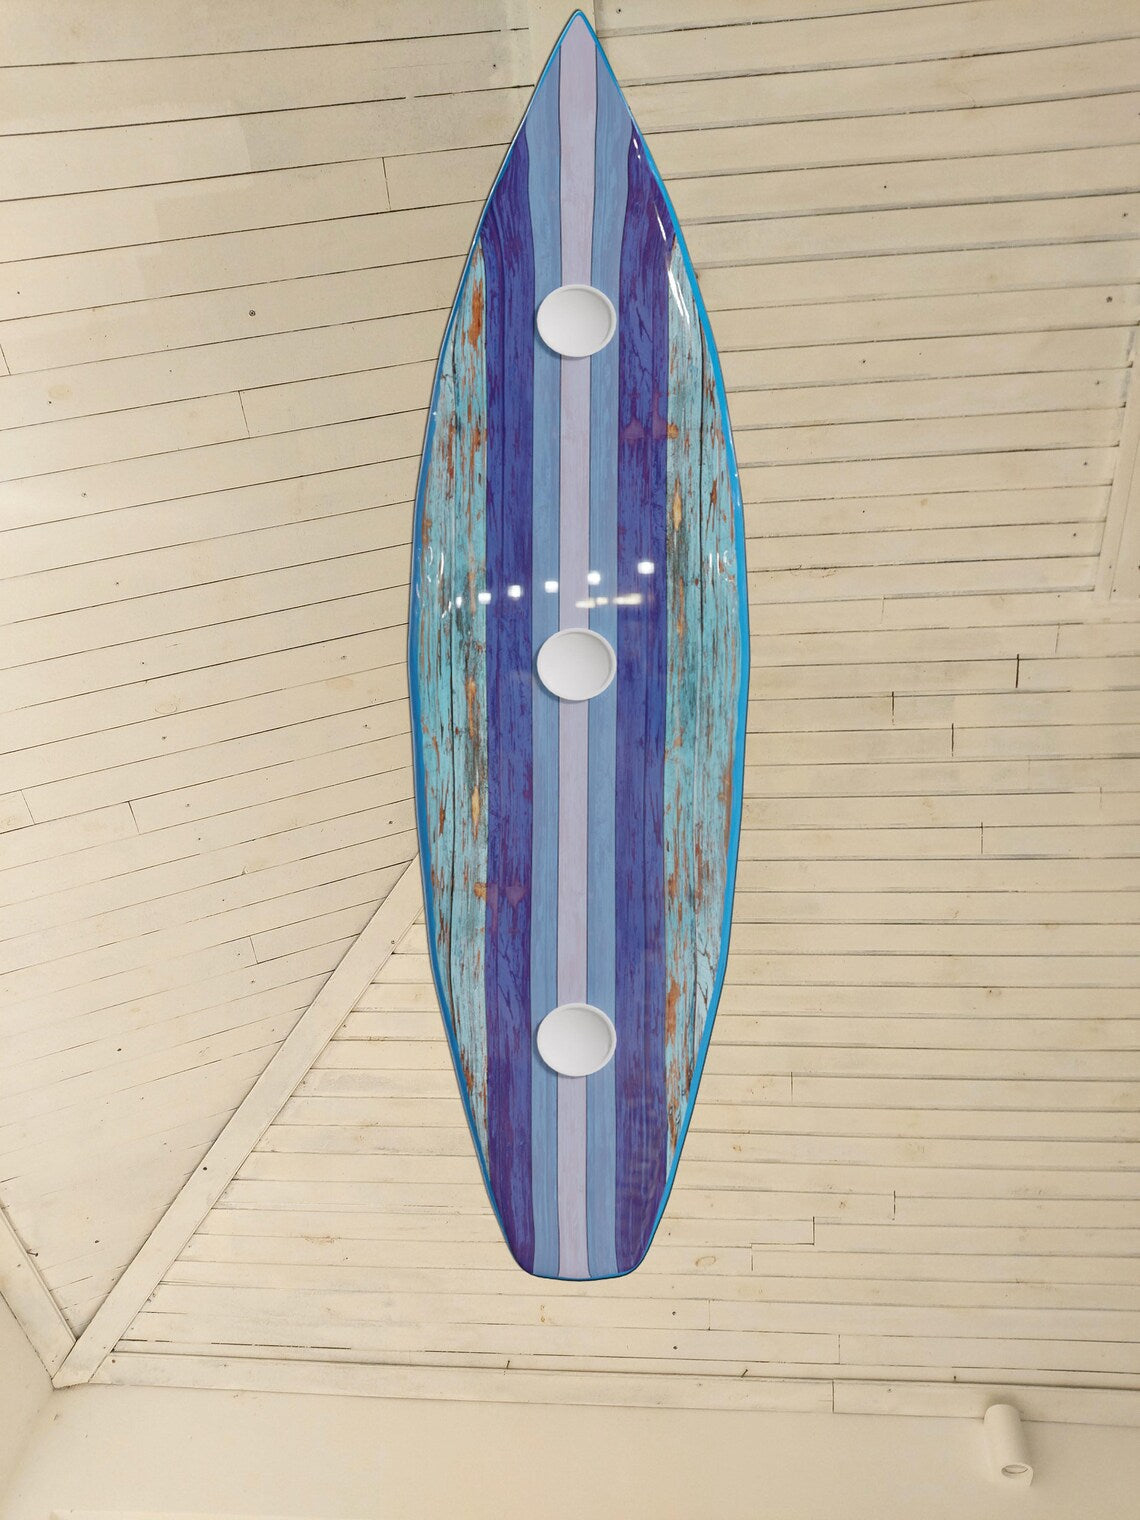 66 inch Surfboard Shaped Ceiling Chandelier - Pool Billiard Table Light